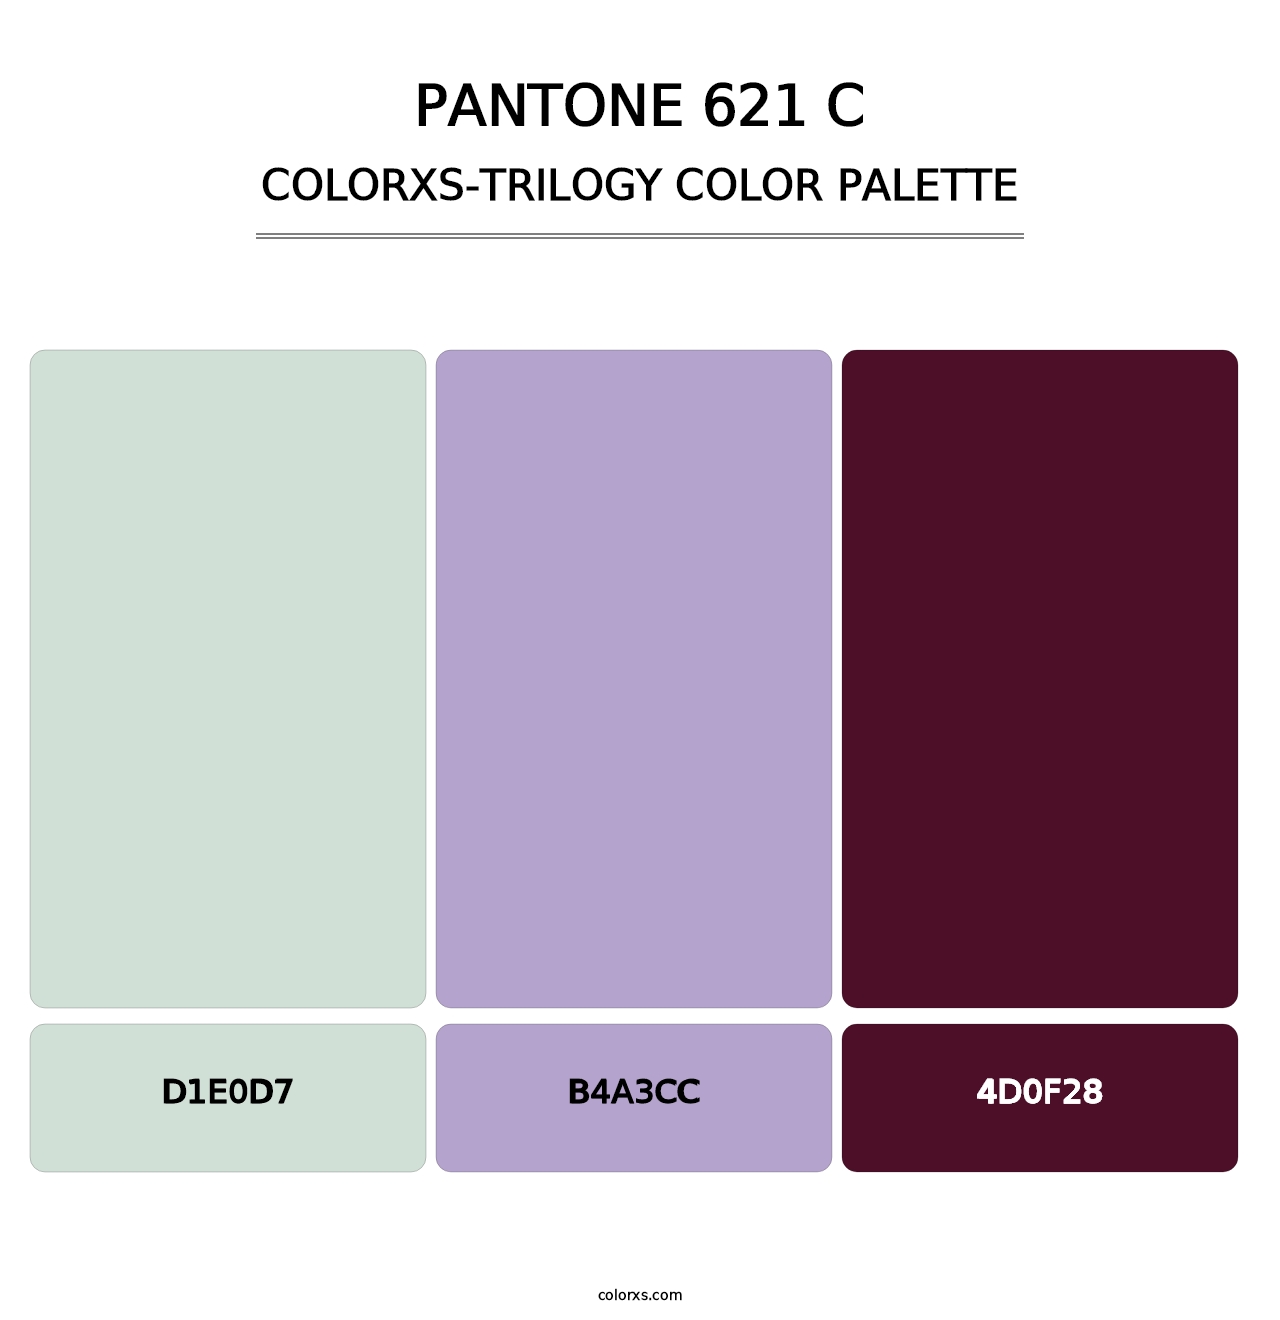 PANTONE 621 C - Colorxs Trilogy Palette